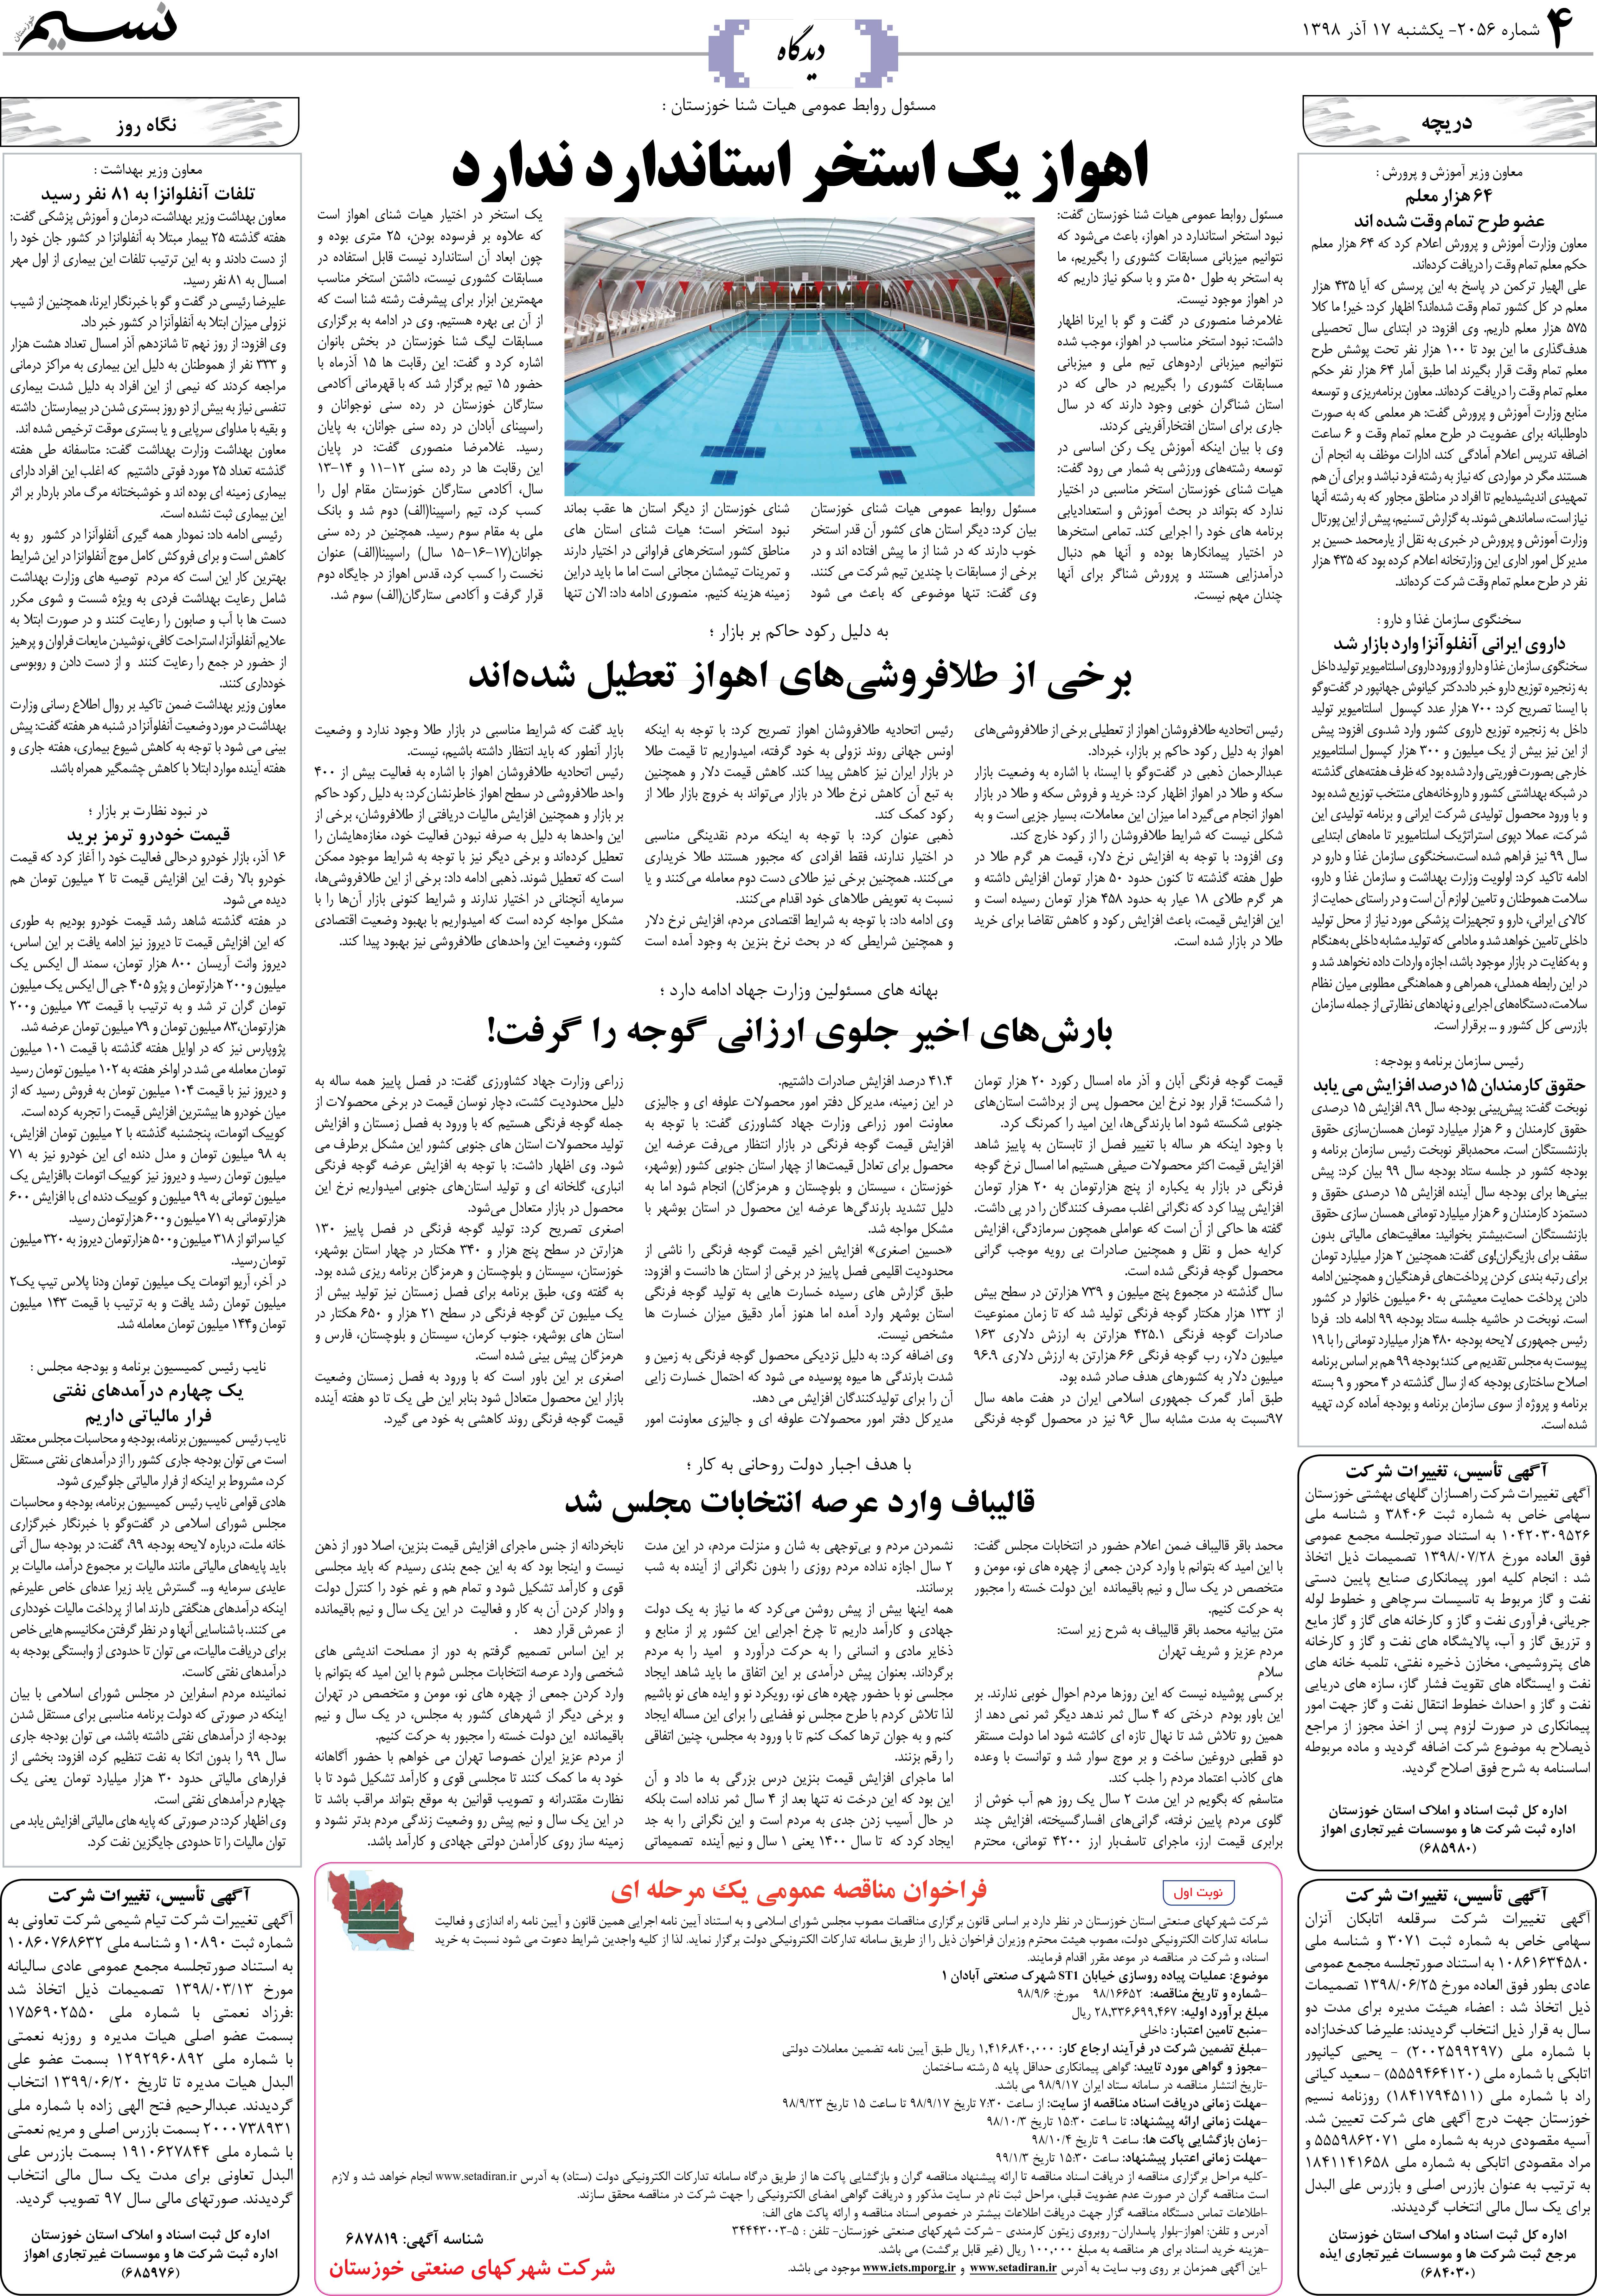 صفحه دیدگاه روزنامه نسیم شماره 2056